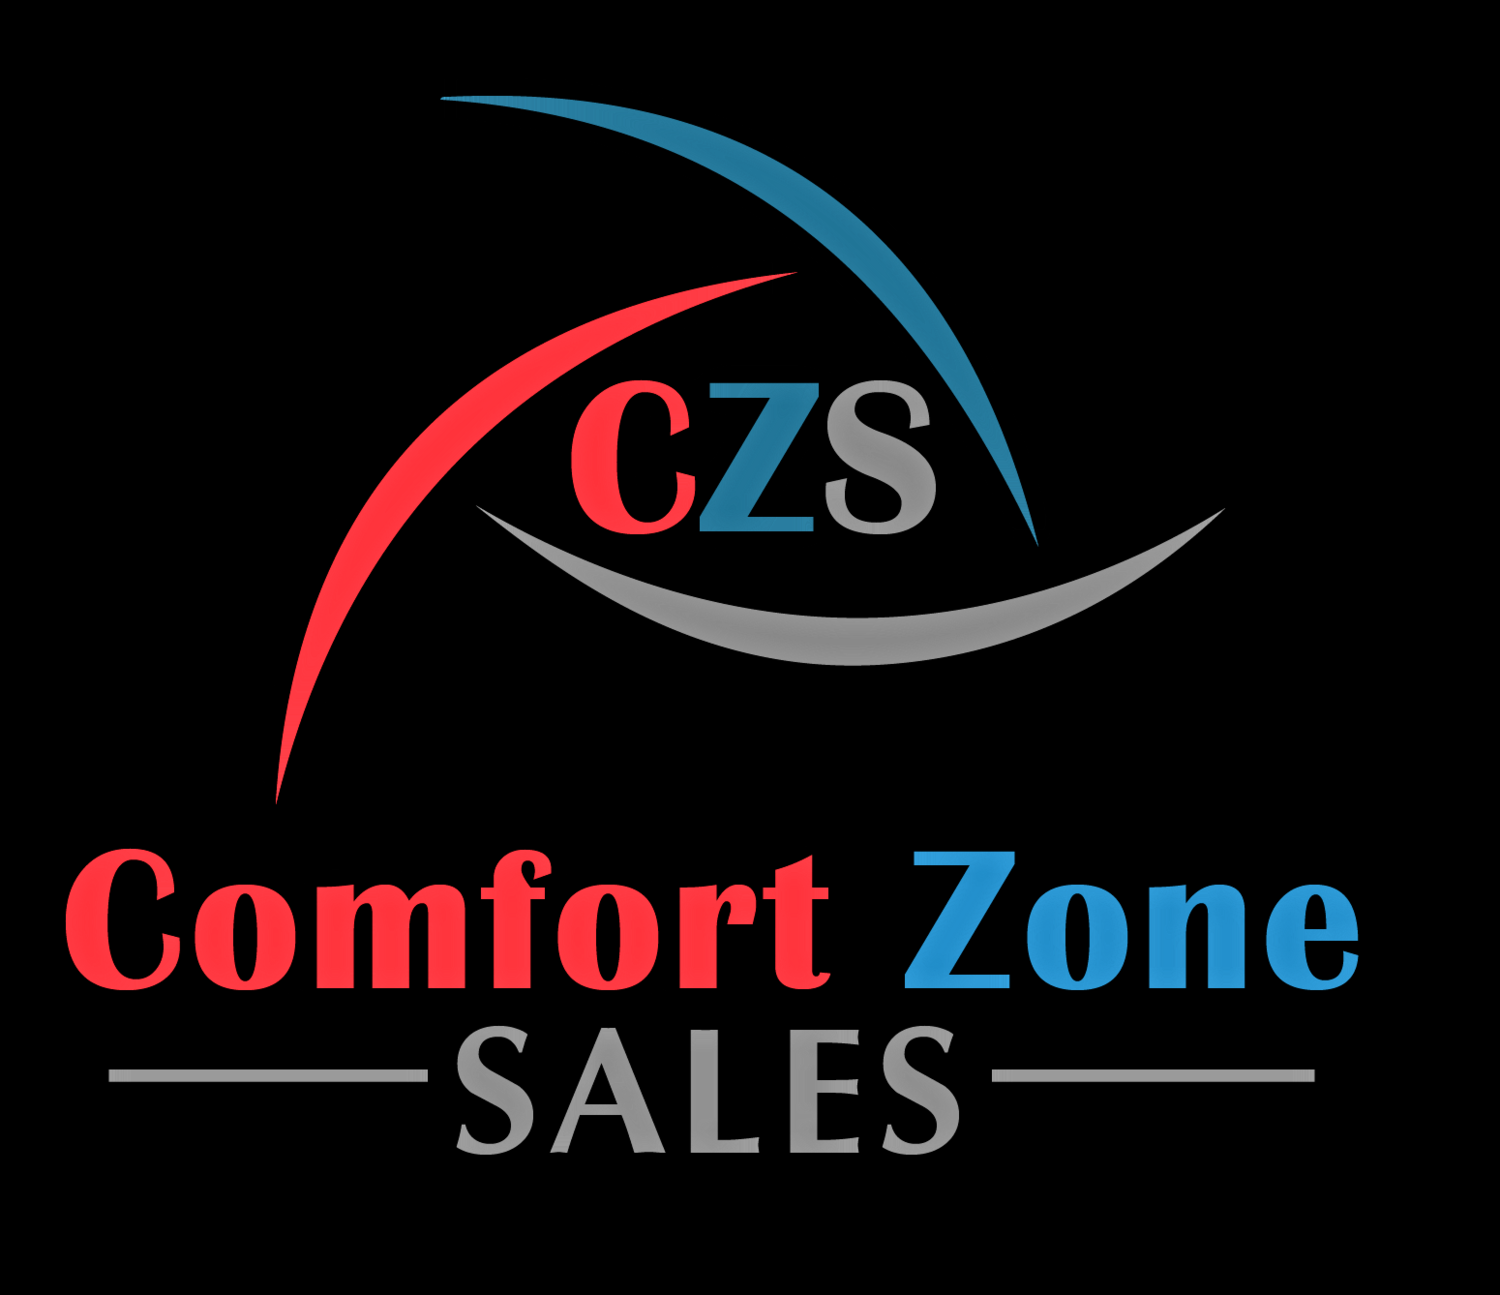 Comfort Zones Sales 